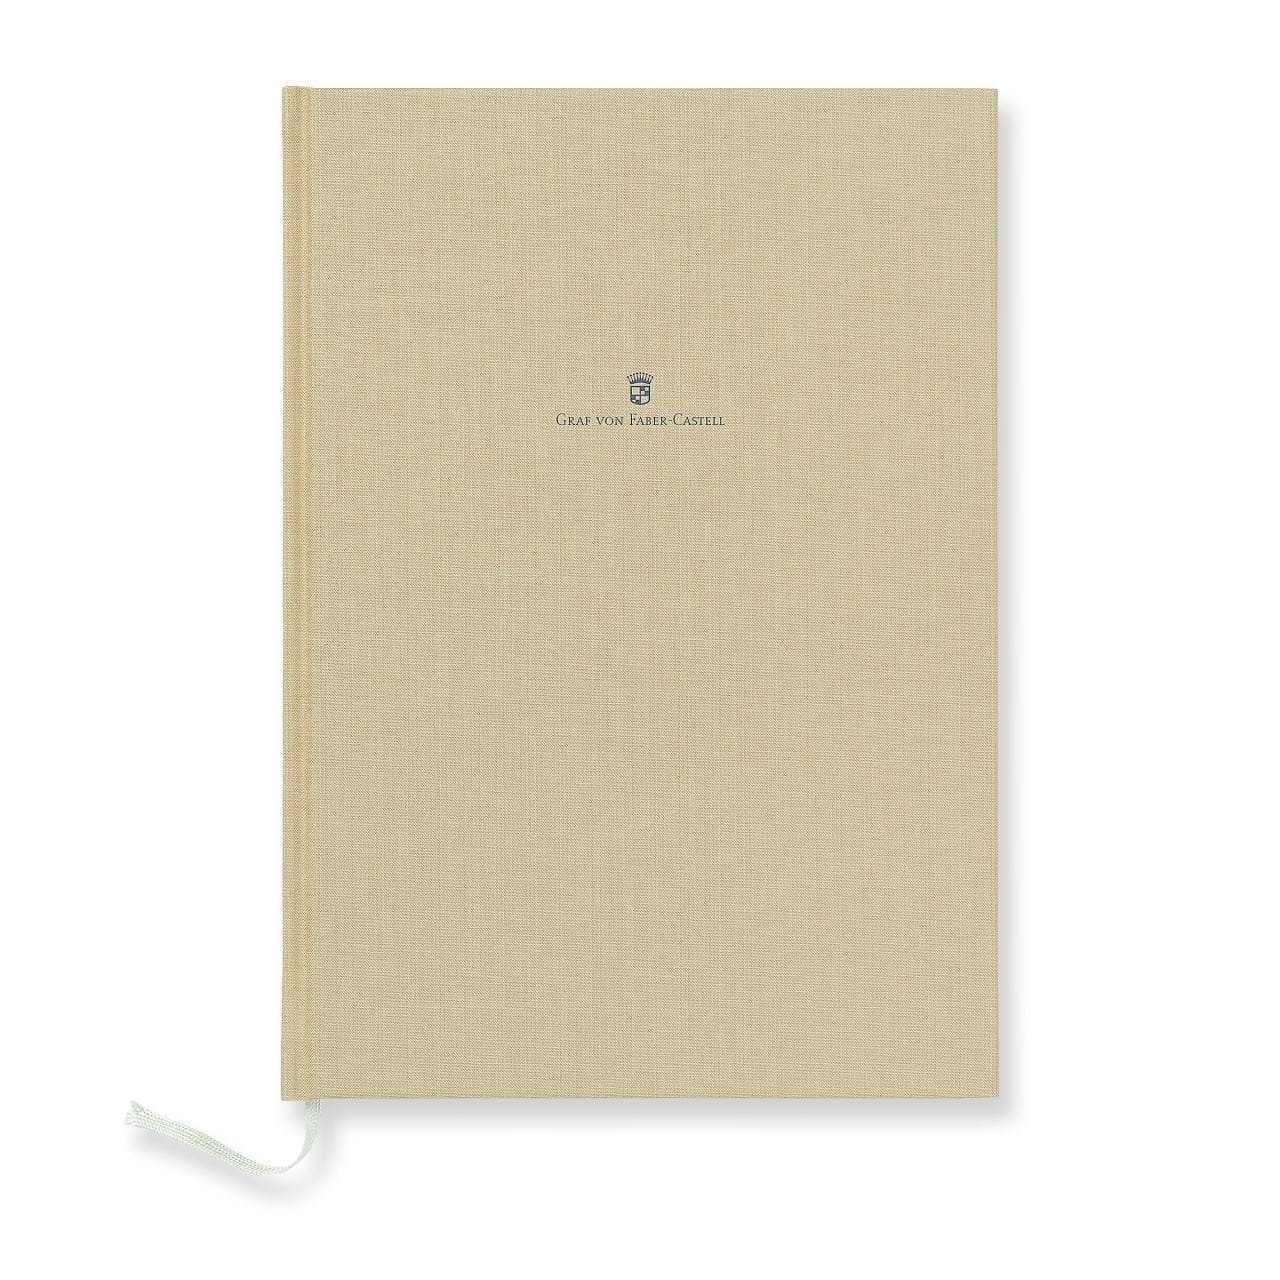 Graf-von-Faber-Castell - Book con copertina in lino formato A4, sabbia